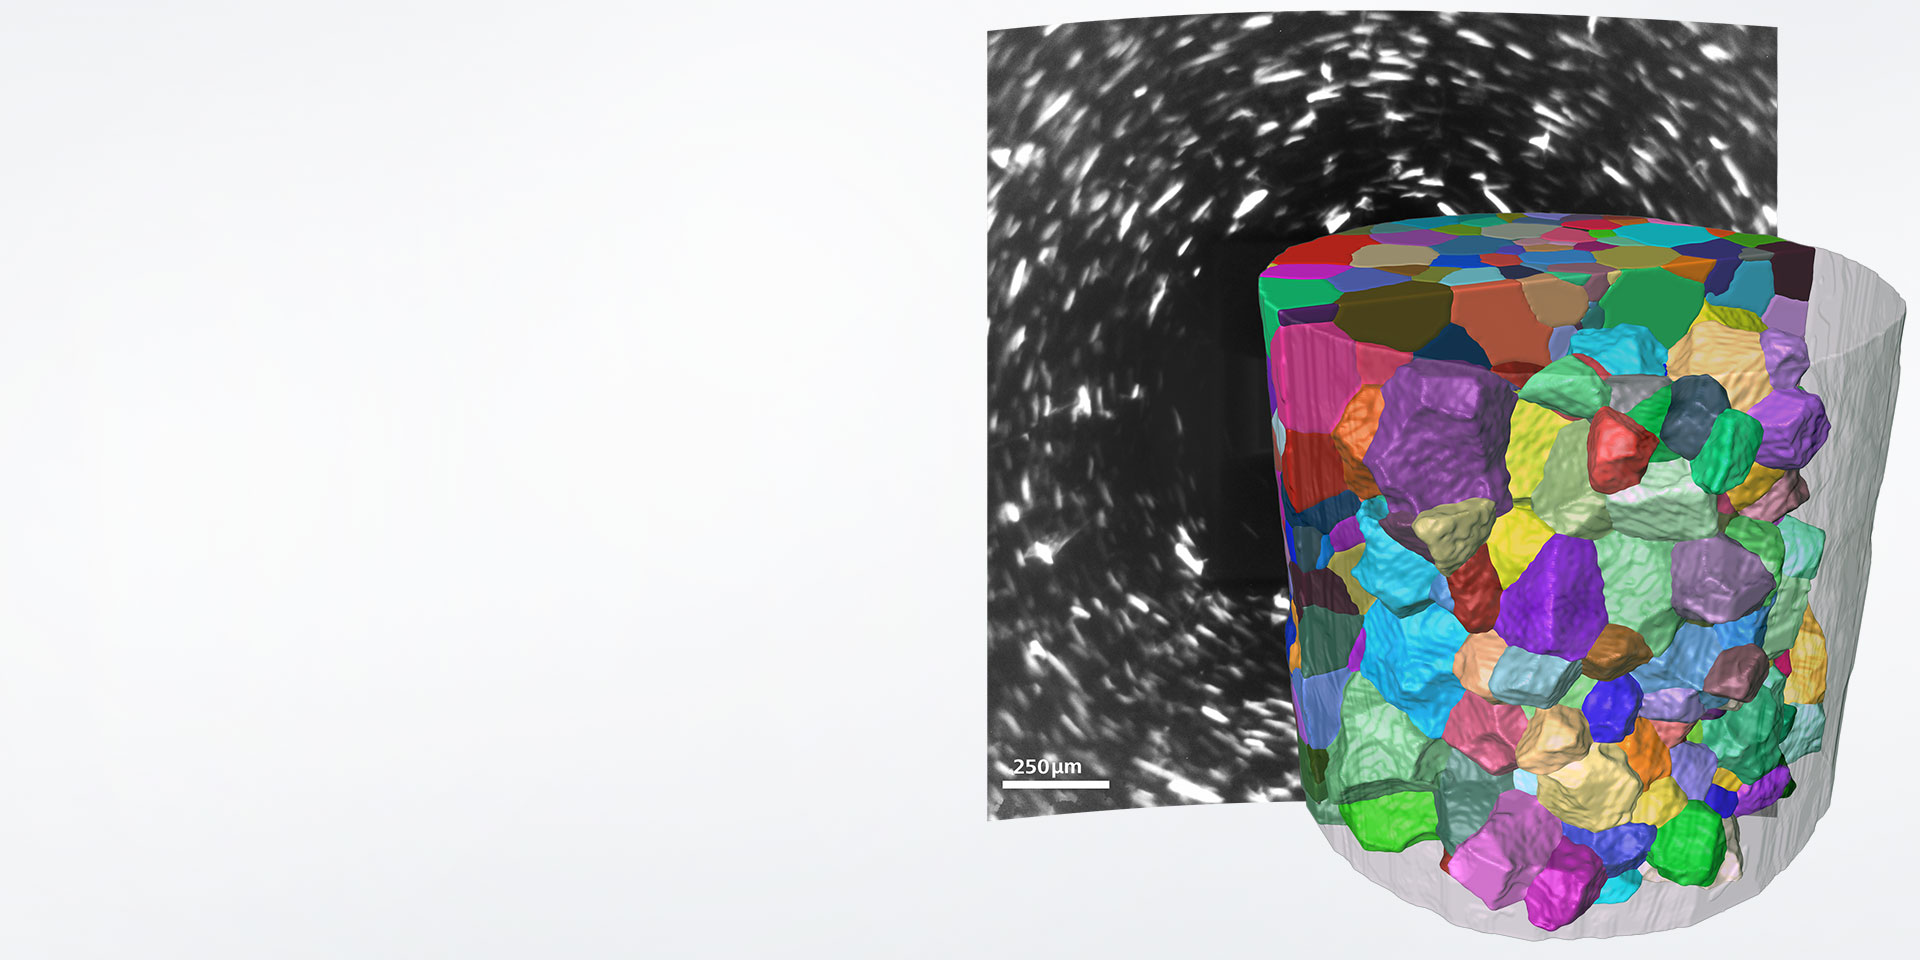  使用LabDCT采集的阿姆科铁晶粒微观结构的重构图像。根据晶粒取向为晶粒着色，重构图像显示真正的晶粒形状。背景显示LabDCT采集过程中收集的衍射图案示例。